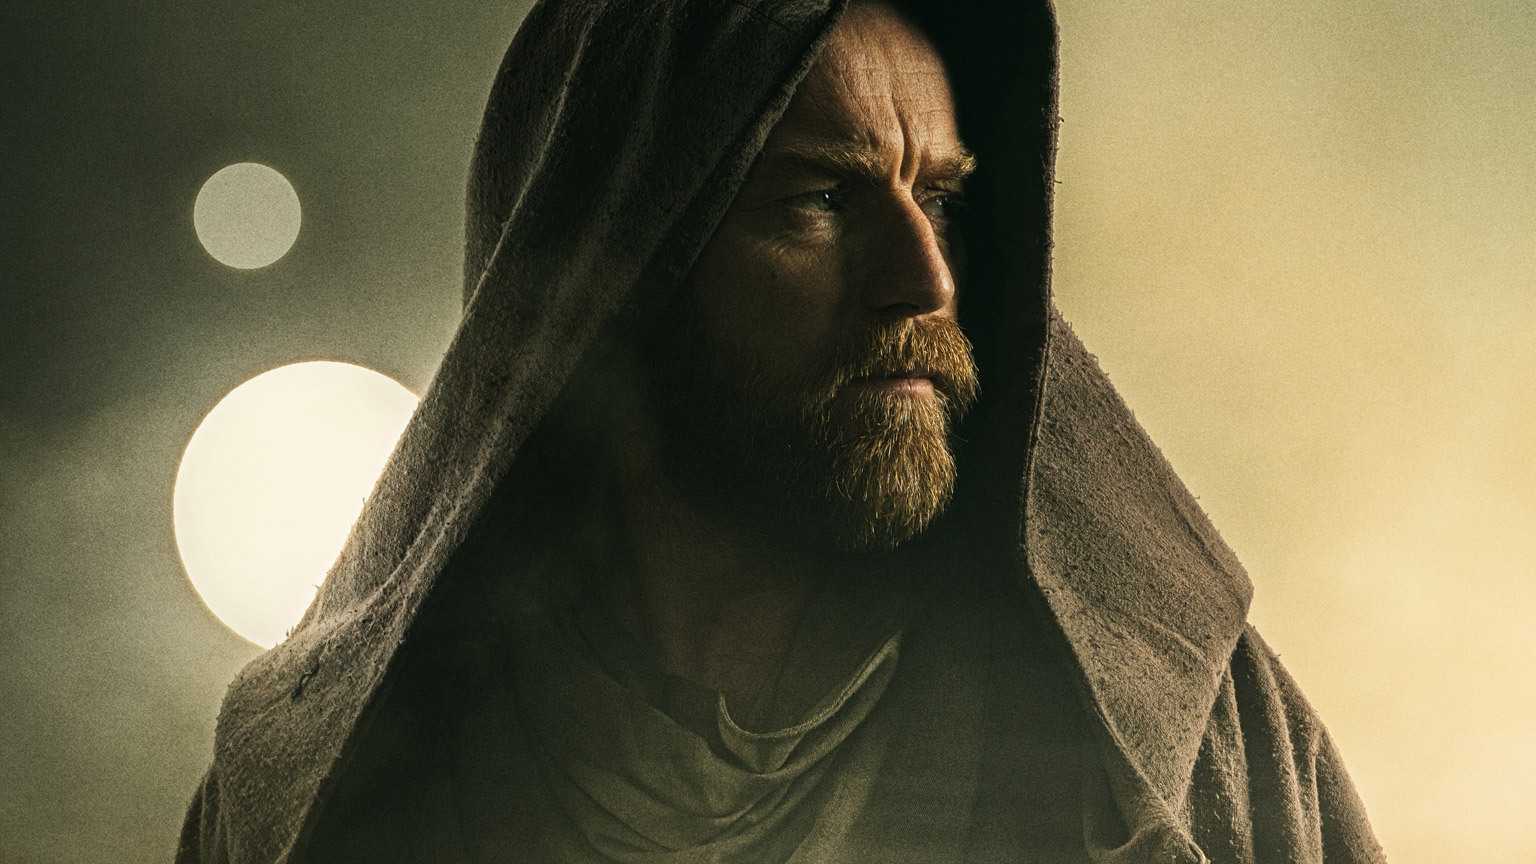 Obi-Wan Kenobi Episode 5 Review - A lackluster setup for the finale